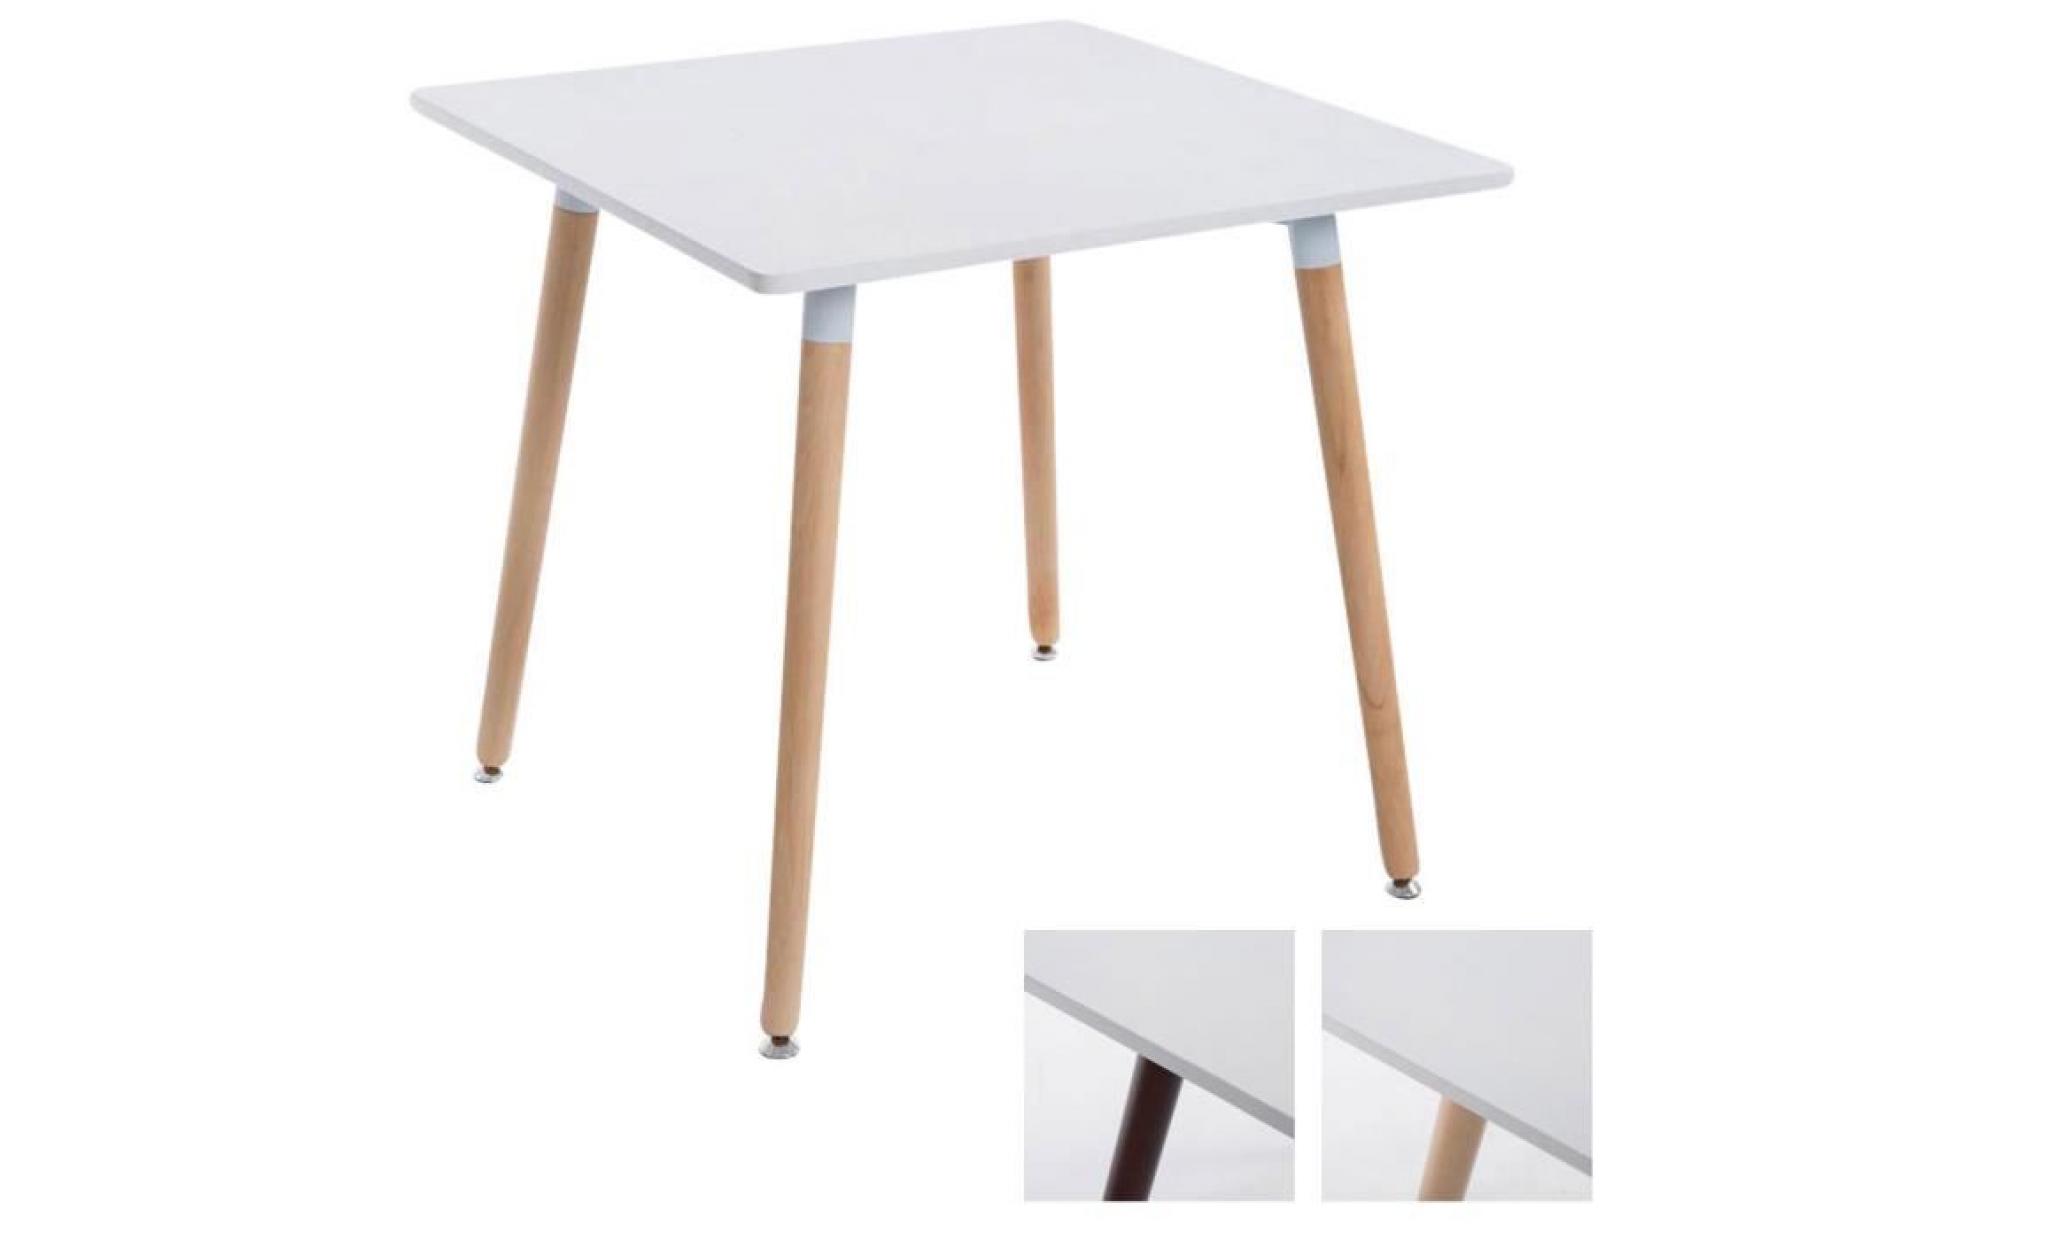 clp table à manger bente, carrée, 4 pieds en bois, 80 x 80 cm, design, avec protège sol